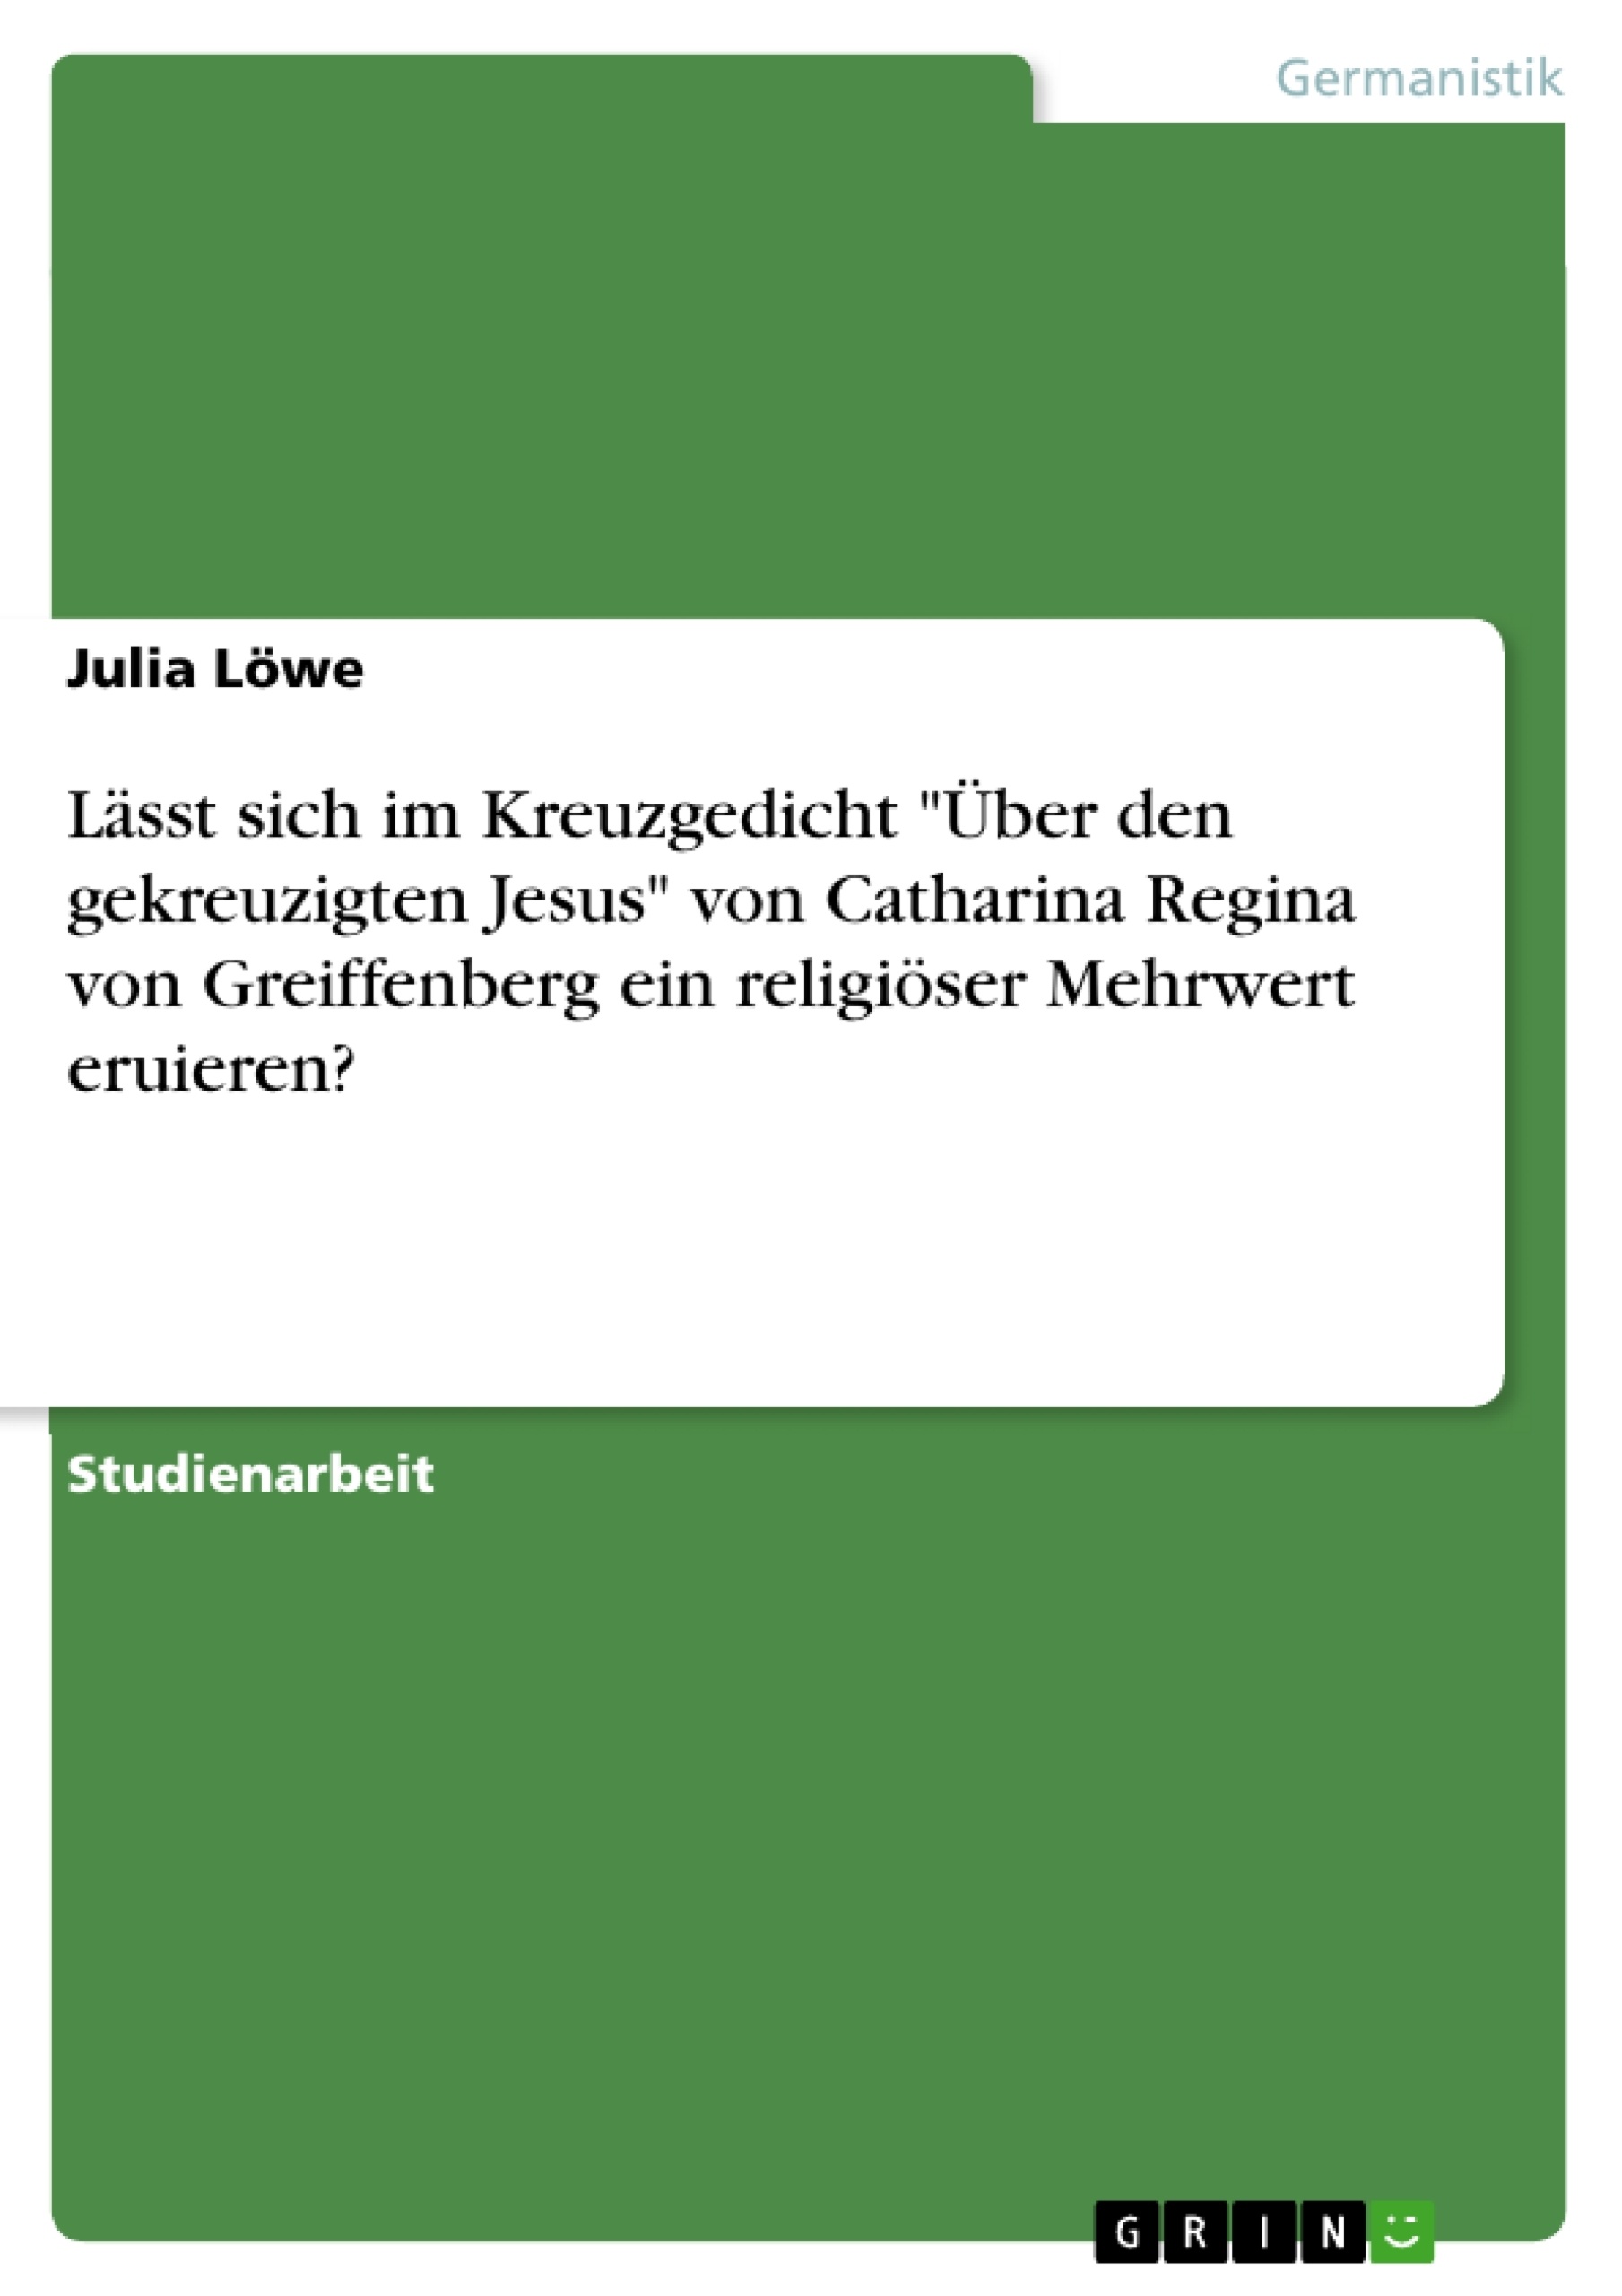 Título: Lässt sich im Kreuzgedicht "Über den gekreuzigten Jesus" von Catharina Regina von Greiffenberg ein religiöser Mehrwert eruieren?